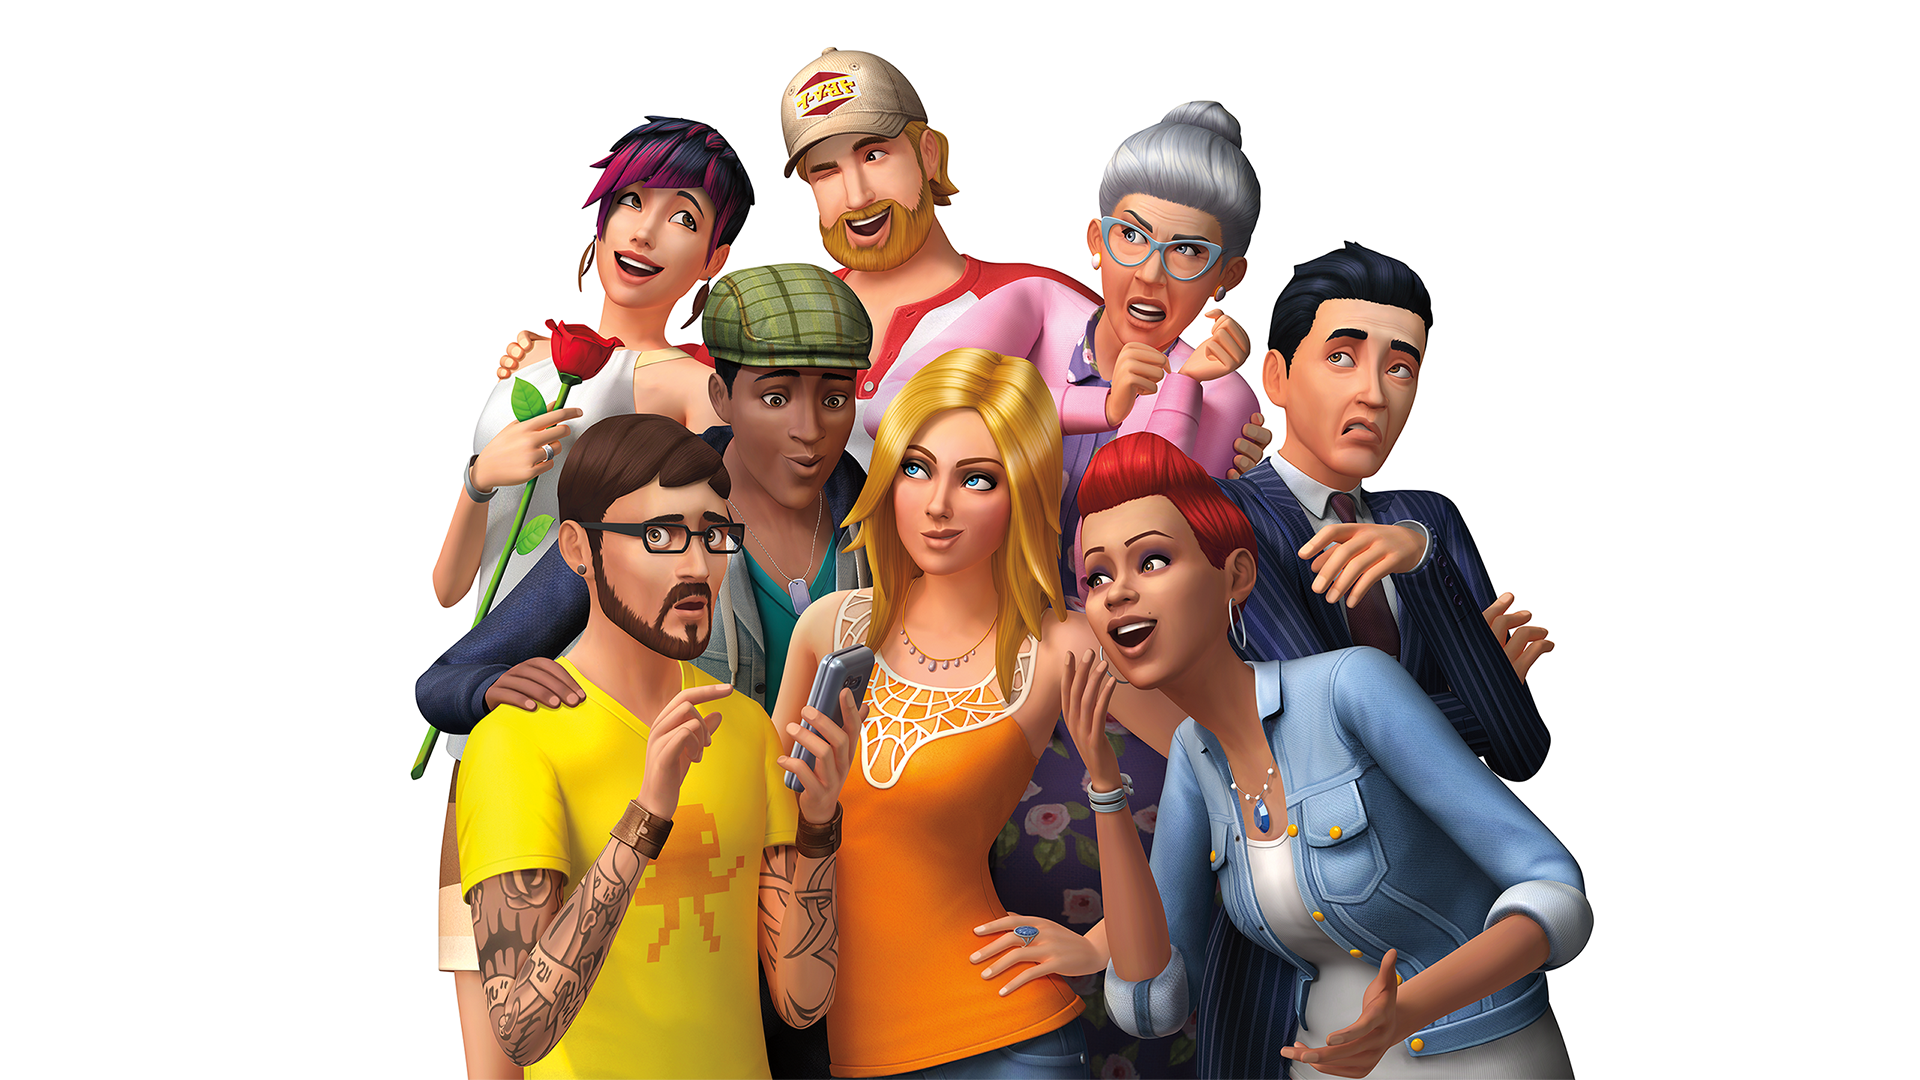 Speel De Sims 4 gratis vanaf 18 oktober